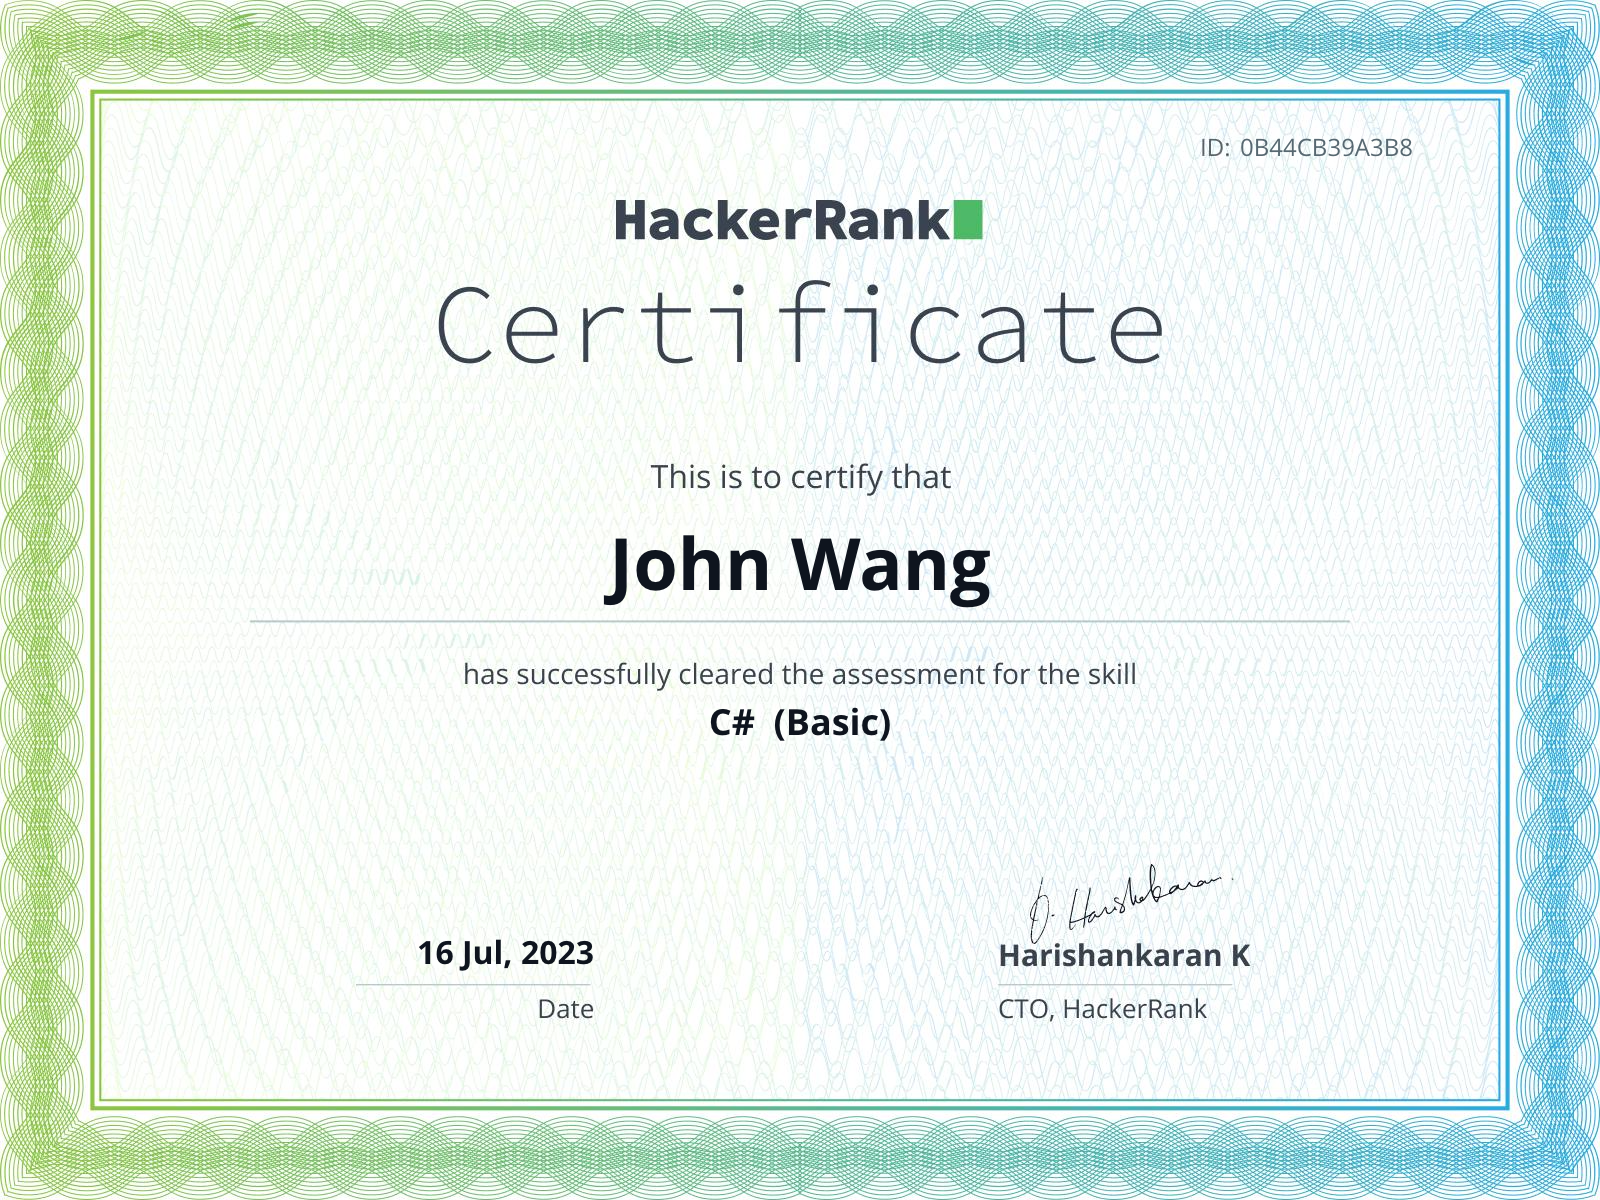 John's C# (Basic) from HackerRank